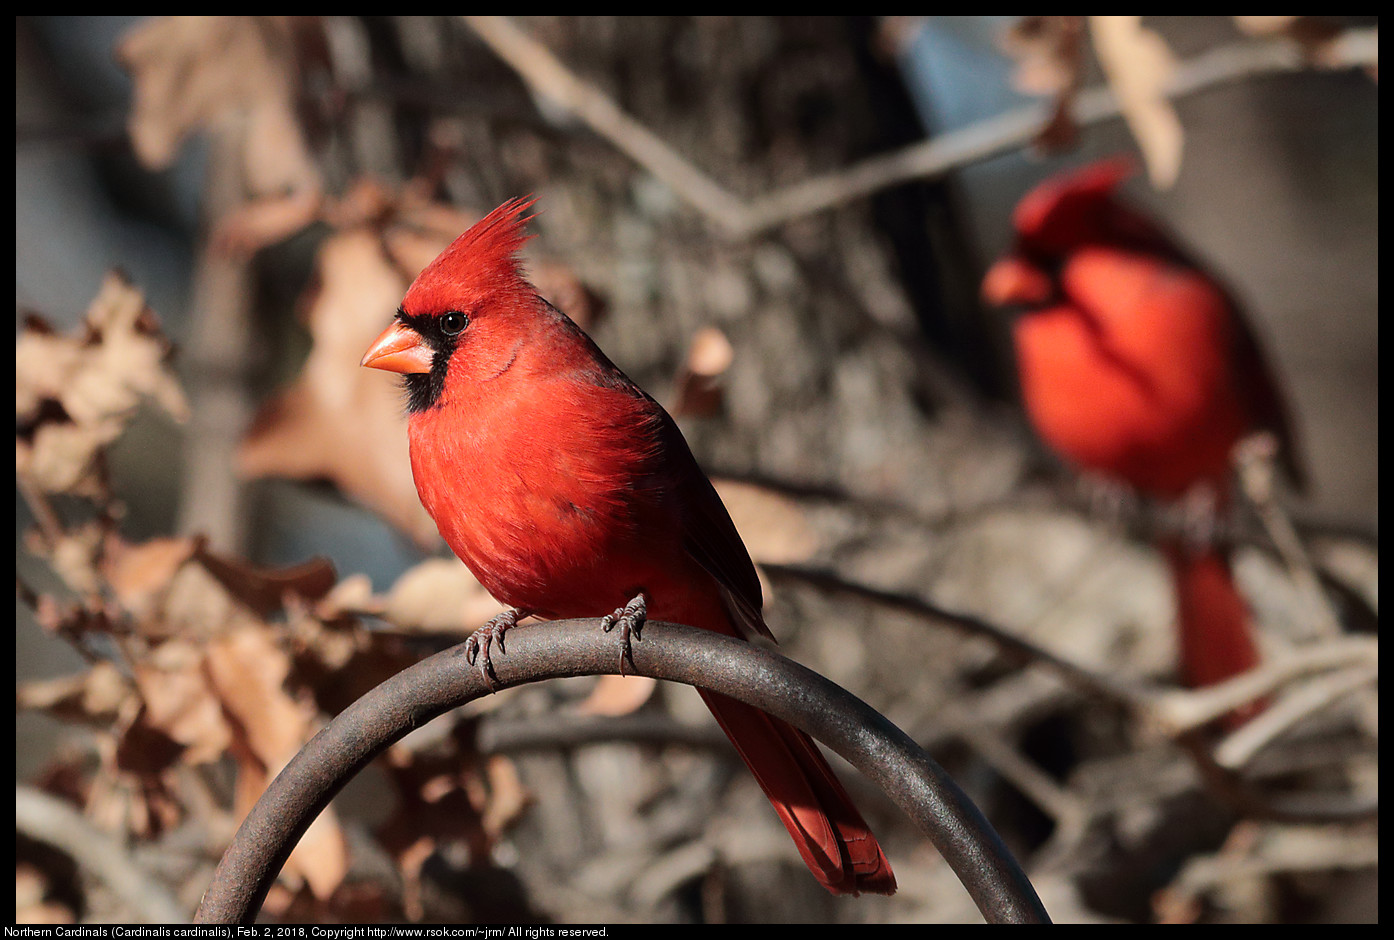 Northern Cardinals (Cardinalis cardinalis), Feb. 2, 2018